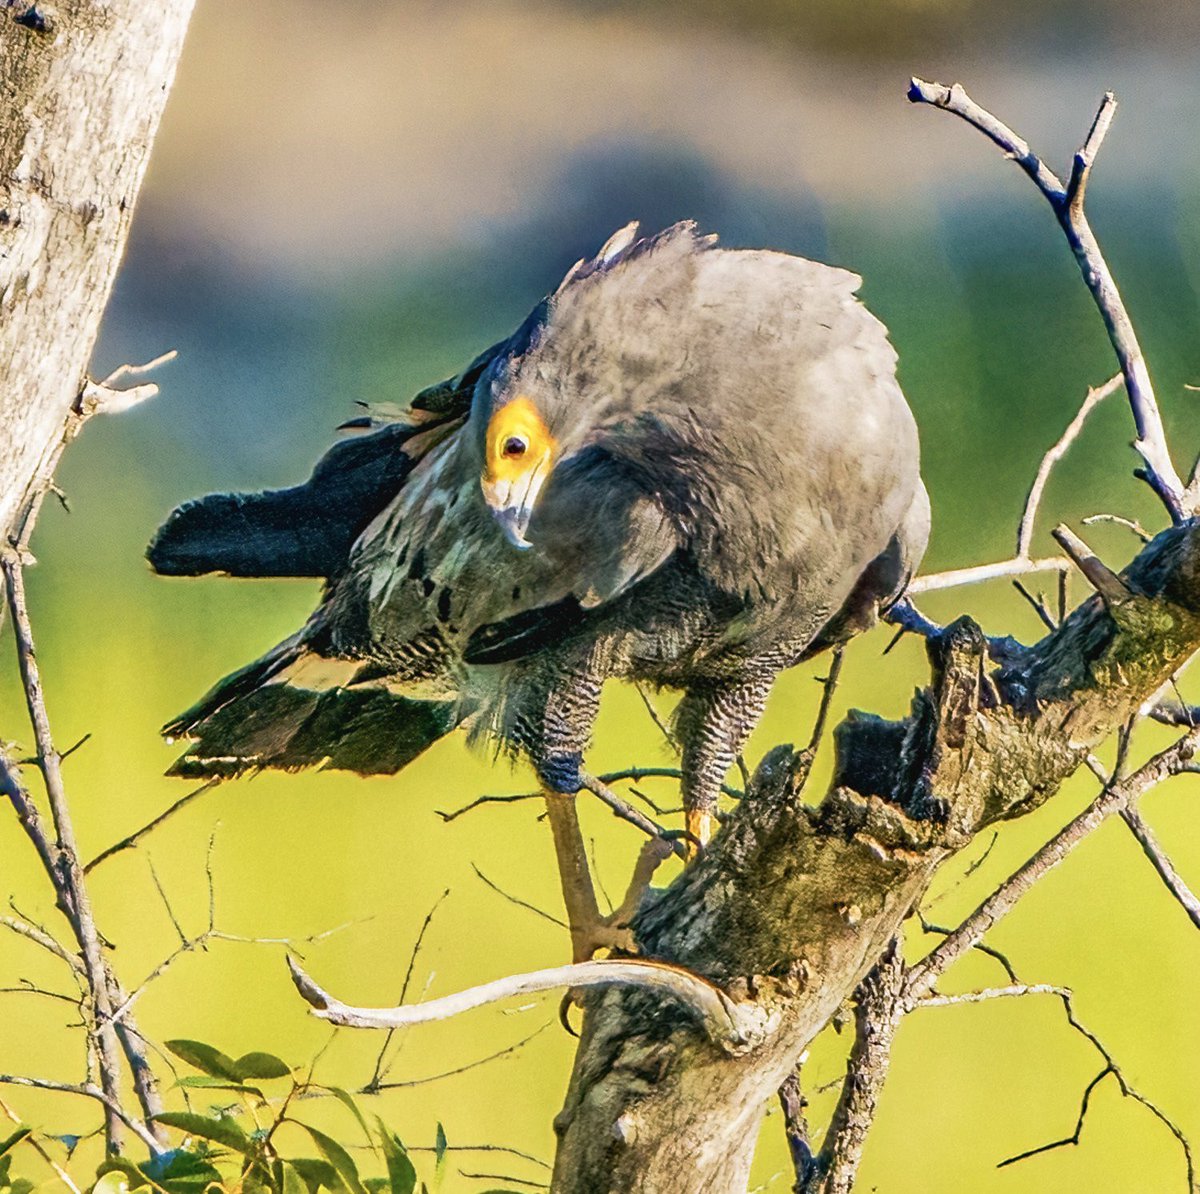 African Harrier Hawk active along banks of the Zambezi @Natures_Voice #BBCWildlifePOTD #TwitterNatureCommunity #birding #NaturePhotography #afrcanwildlifephotography #victoriafalls